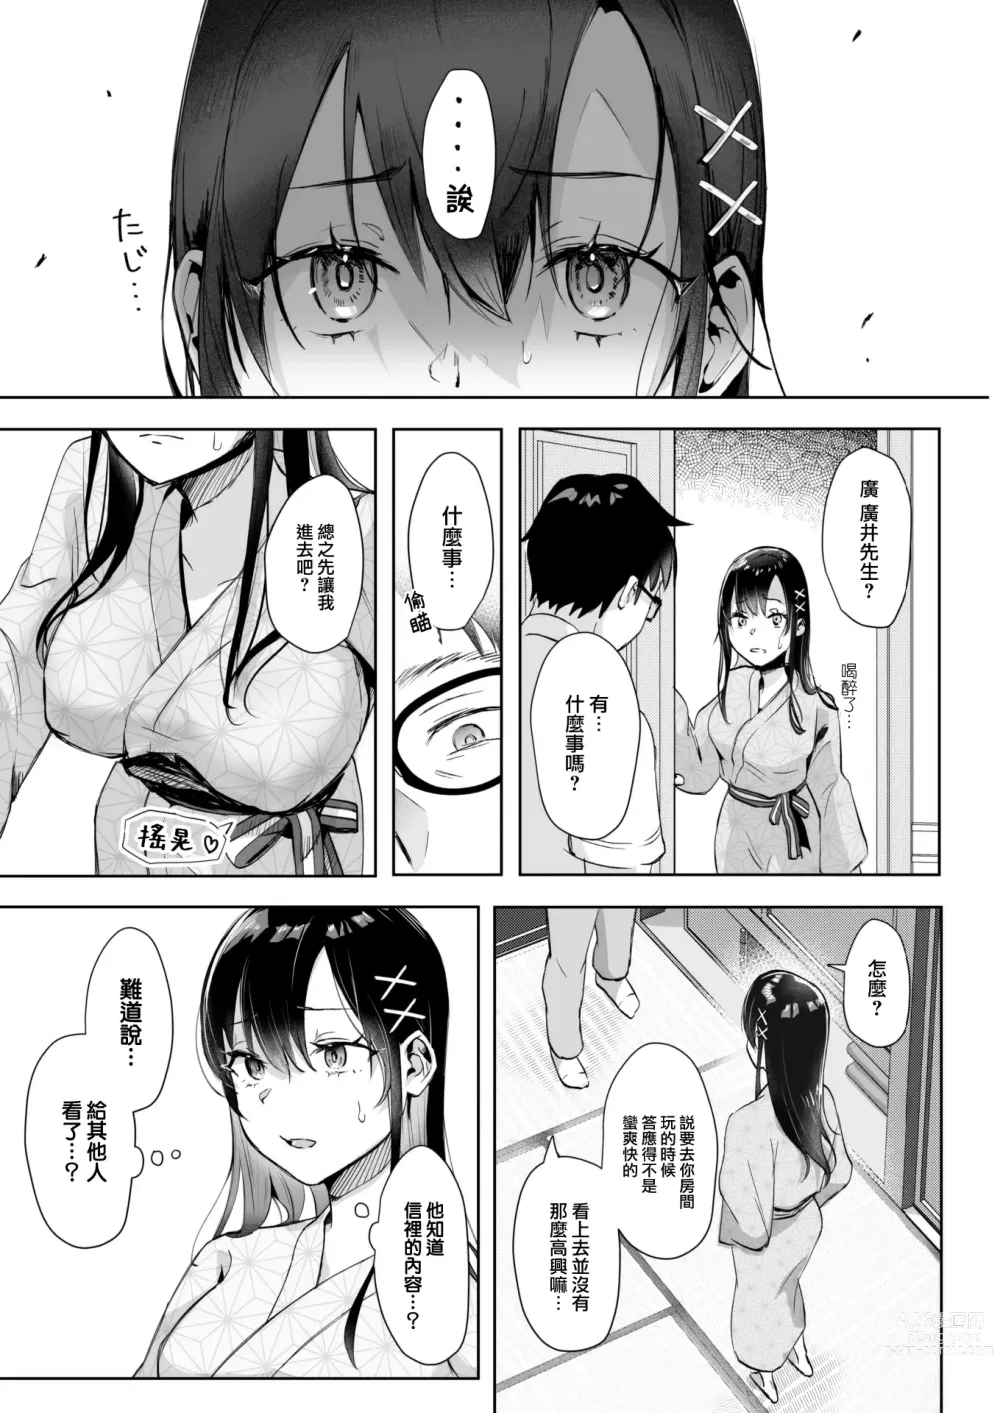 Page 9 of manga Koibumi Confusion